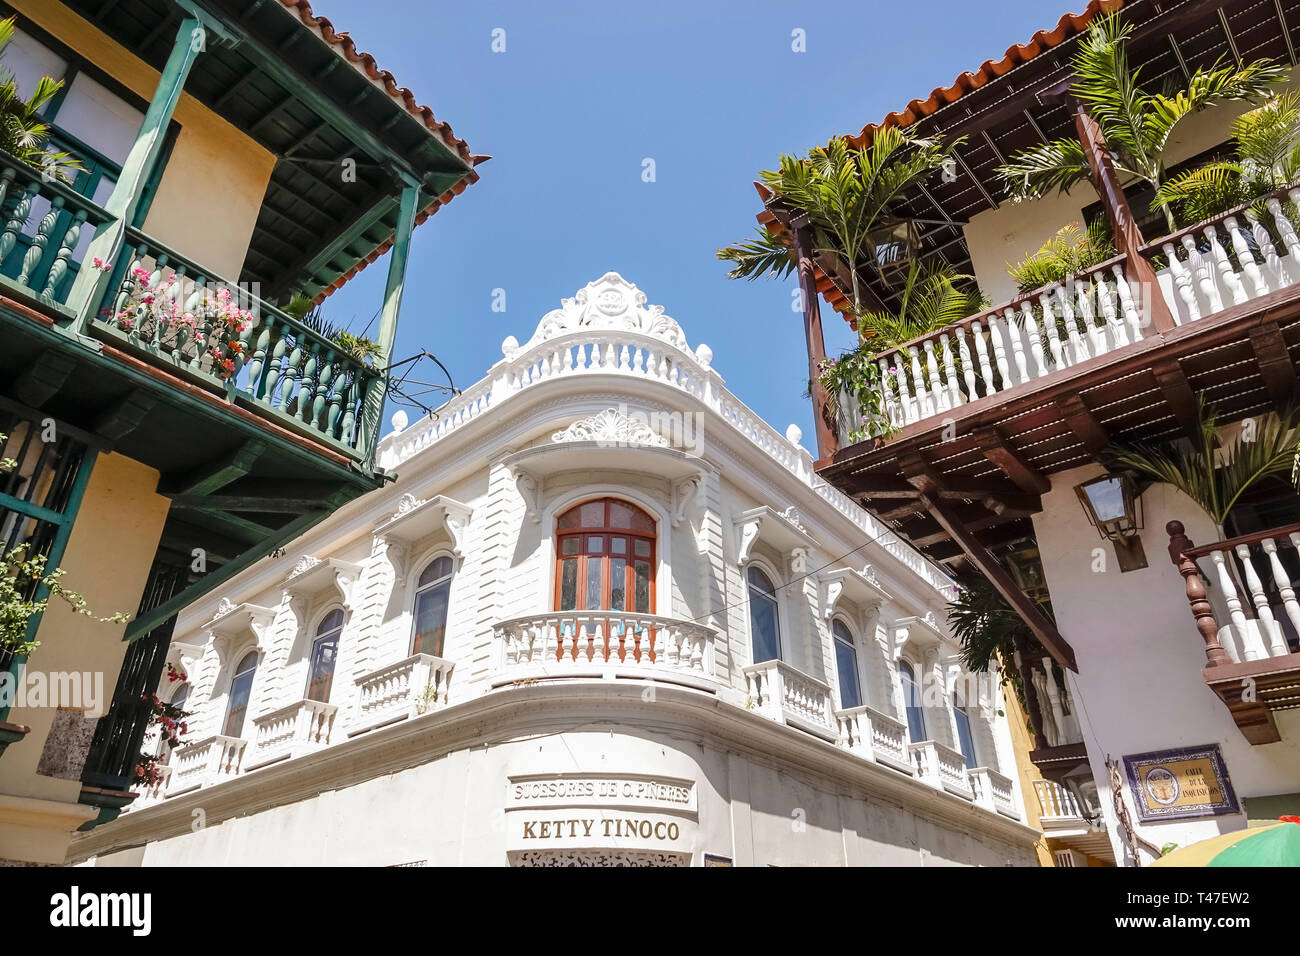 Cartagena Colombia,edificio Pineres,architettura coloniale balconi in legno,esterno dell'edificio,balaustra,boutique Ketty Tinoco,COL190122059 Foto Stock